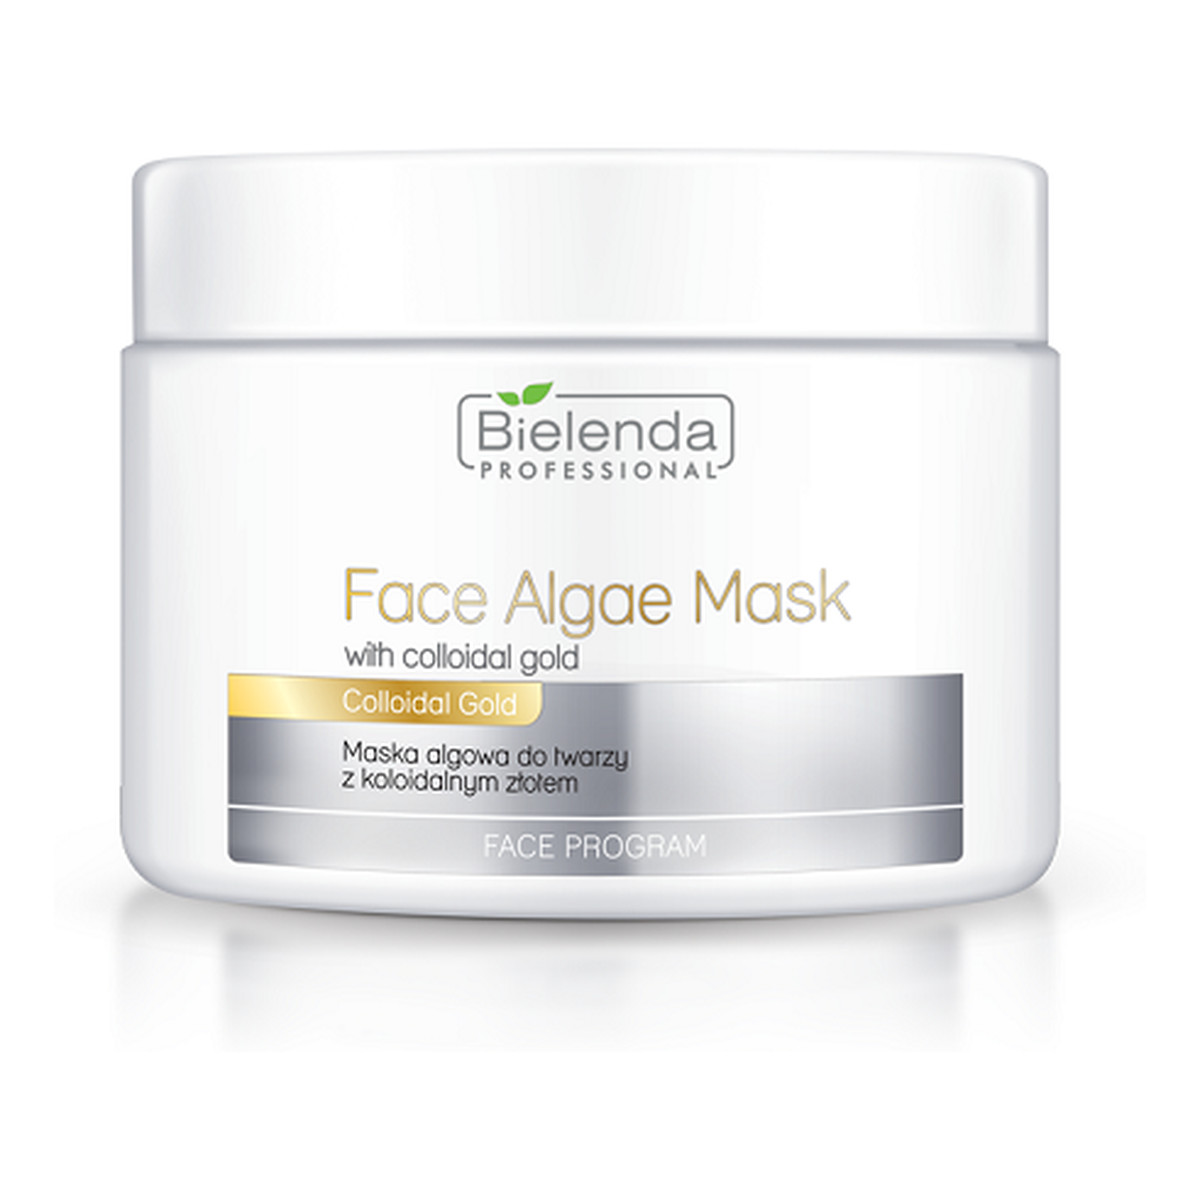 Bielenda Professional Face Algae Mask Maska Algowa Do Twarzy z Koloidalnym Złotem 190g